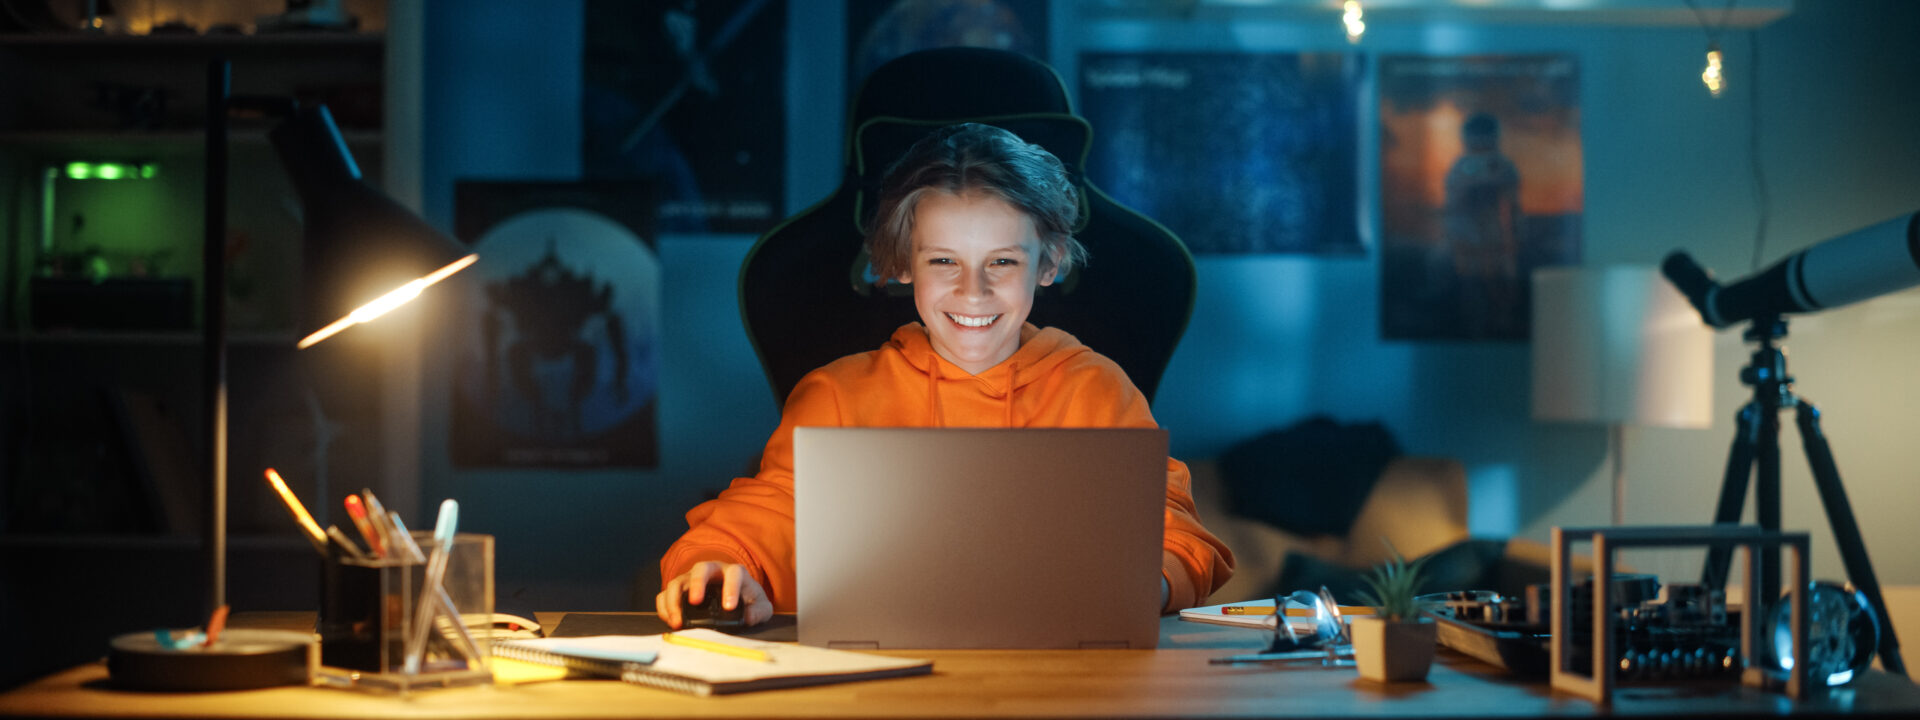 Цифровое воспитание: безопасность детей в сети